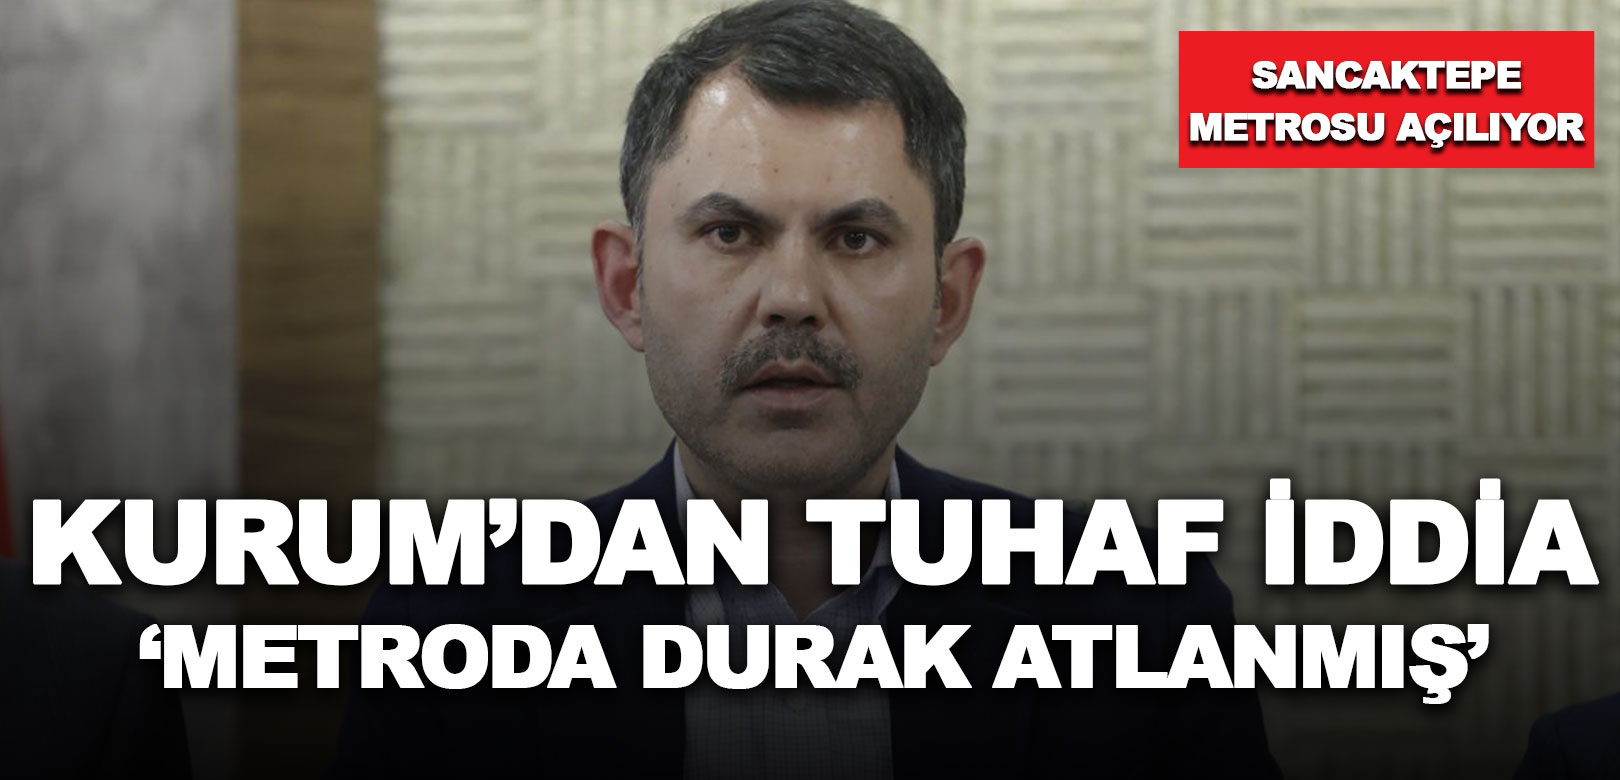 Murat Kurum Sancaktepe metro inşaatında durakların atlandığını iddia etti: Arada durak yok